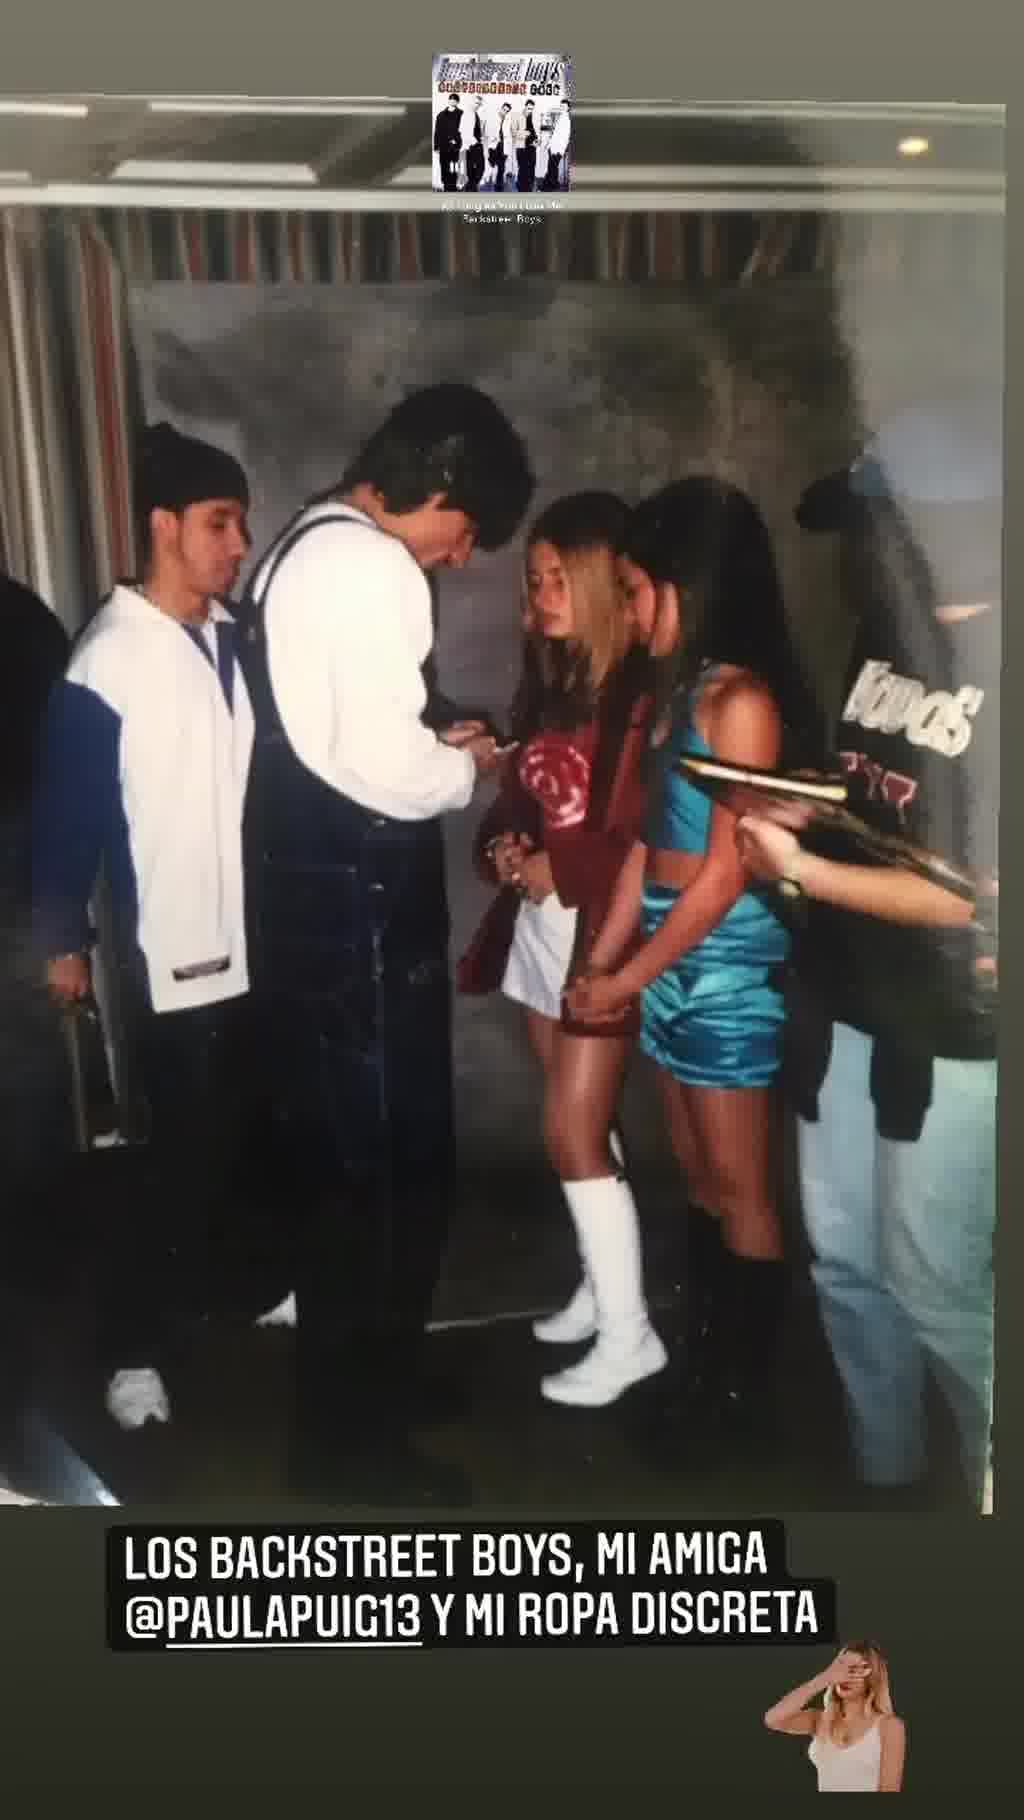 ¿Sabías que Beatriz Luengo conoció a los Backstreet boys vestida como de Geri de las Spice girls?